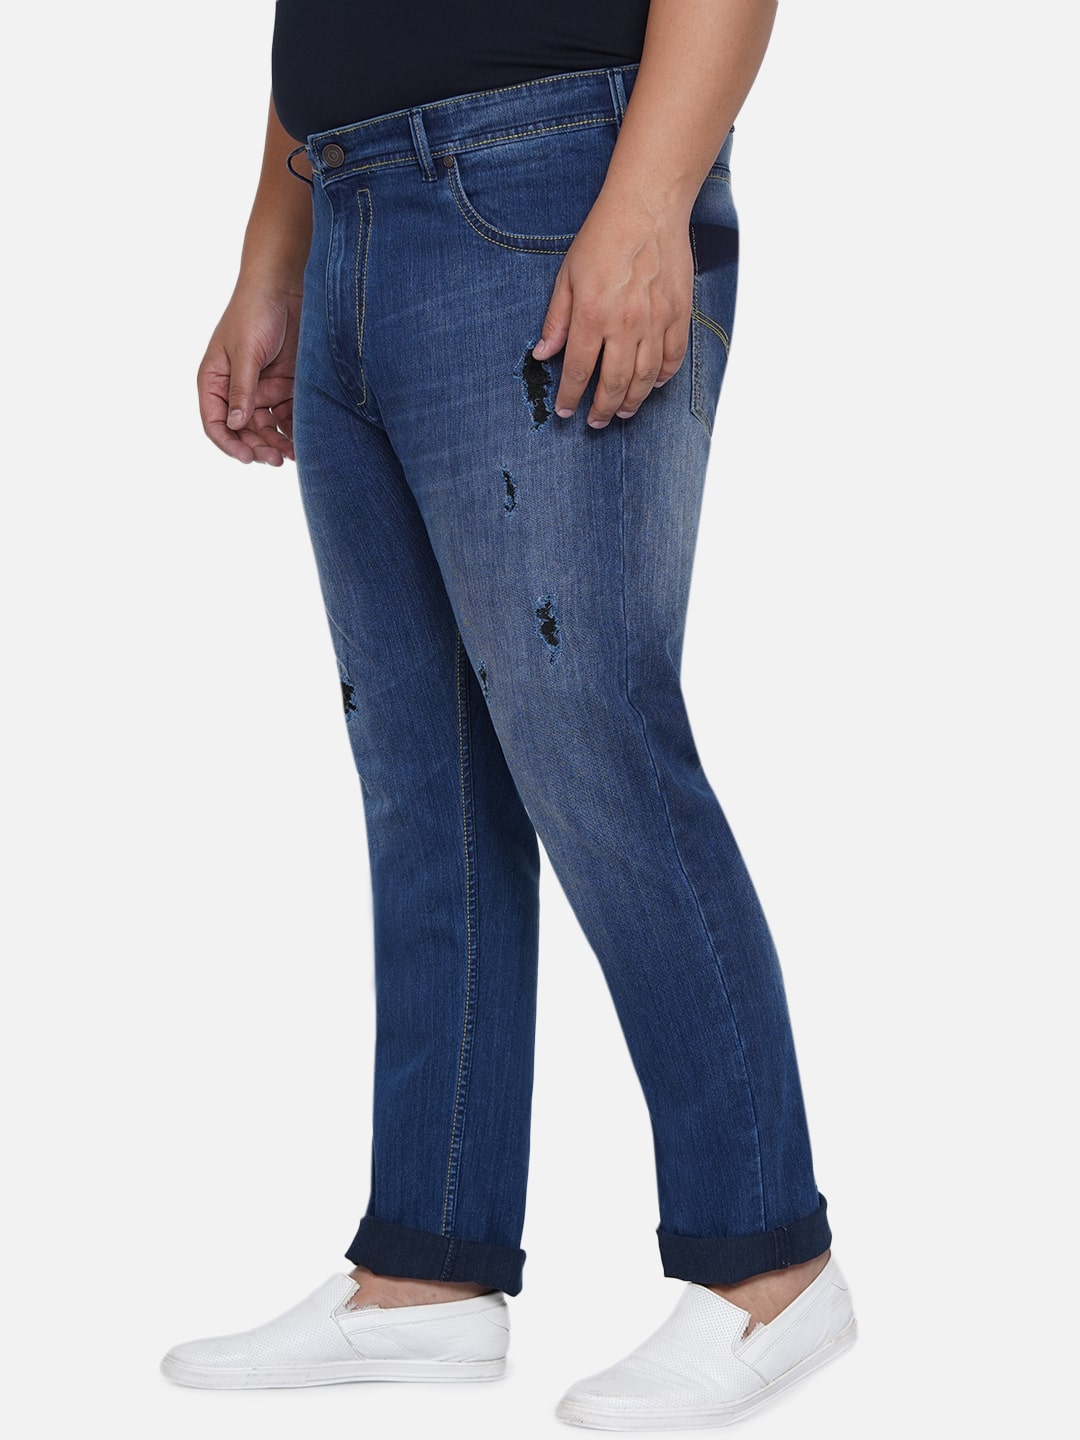 affordables/jeans/EJPJ2050/ejpj2050-5.jpg